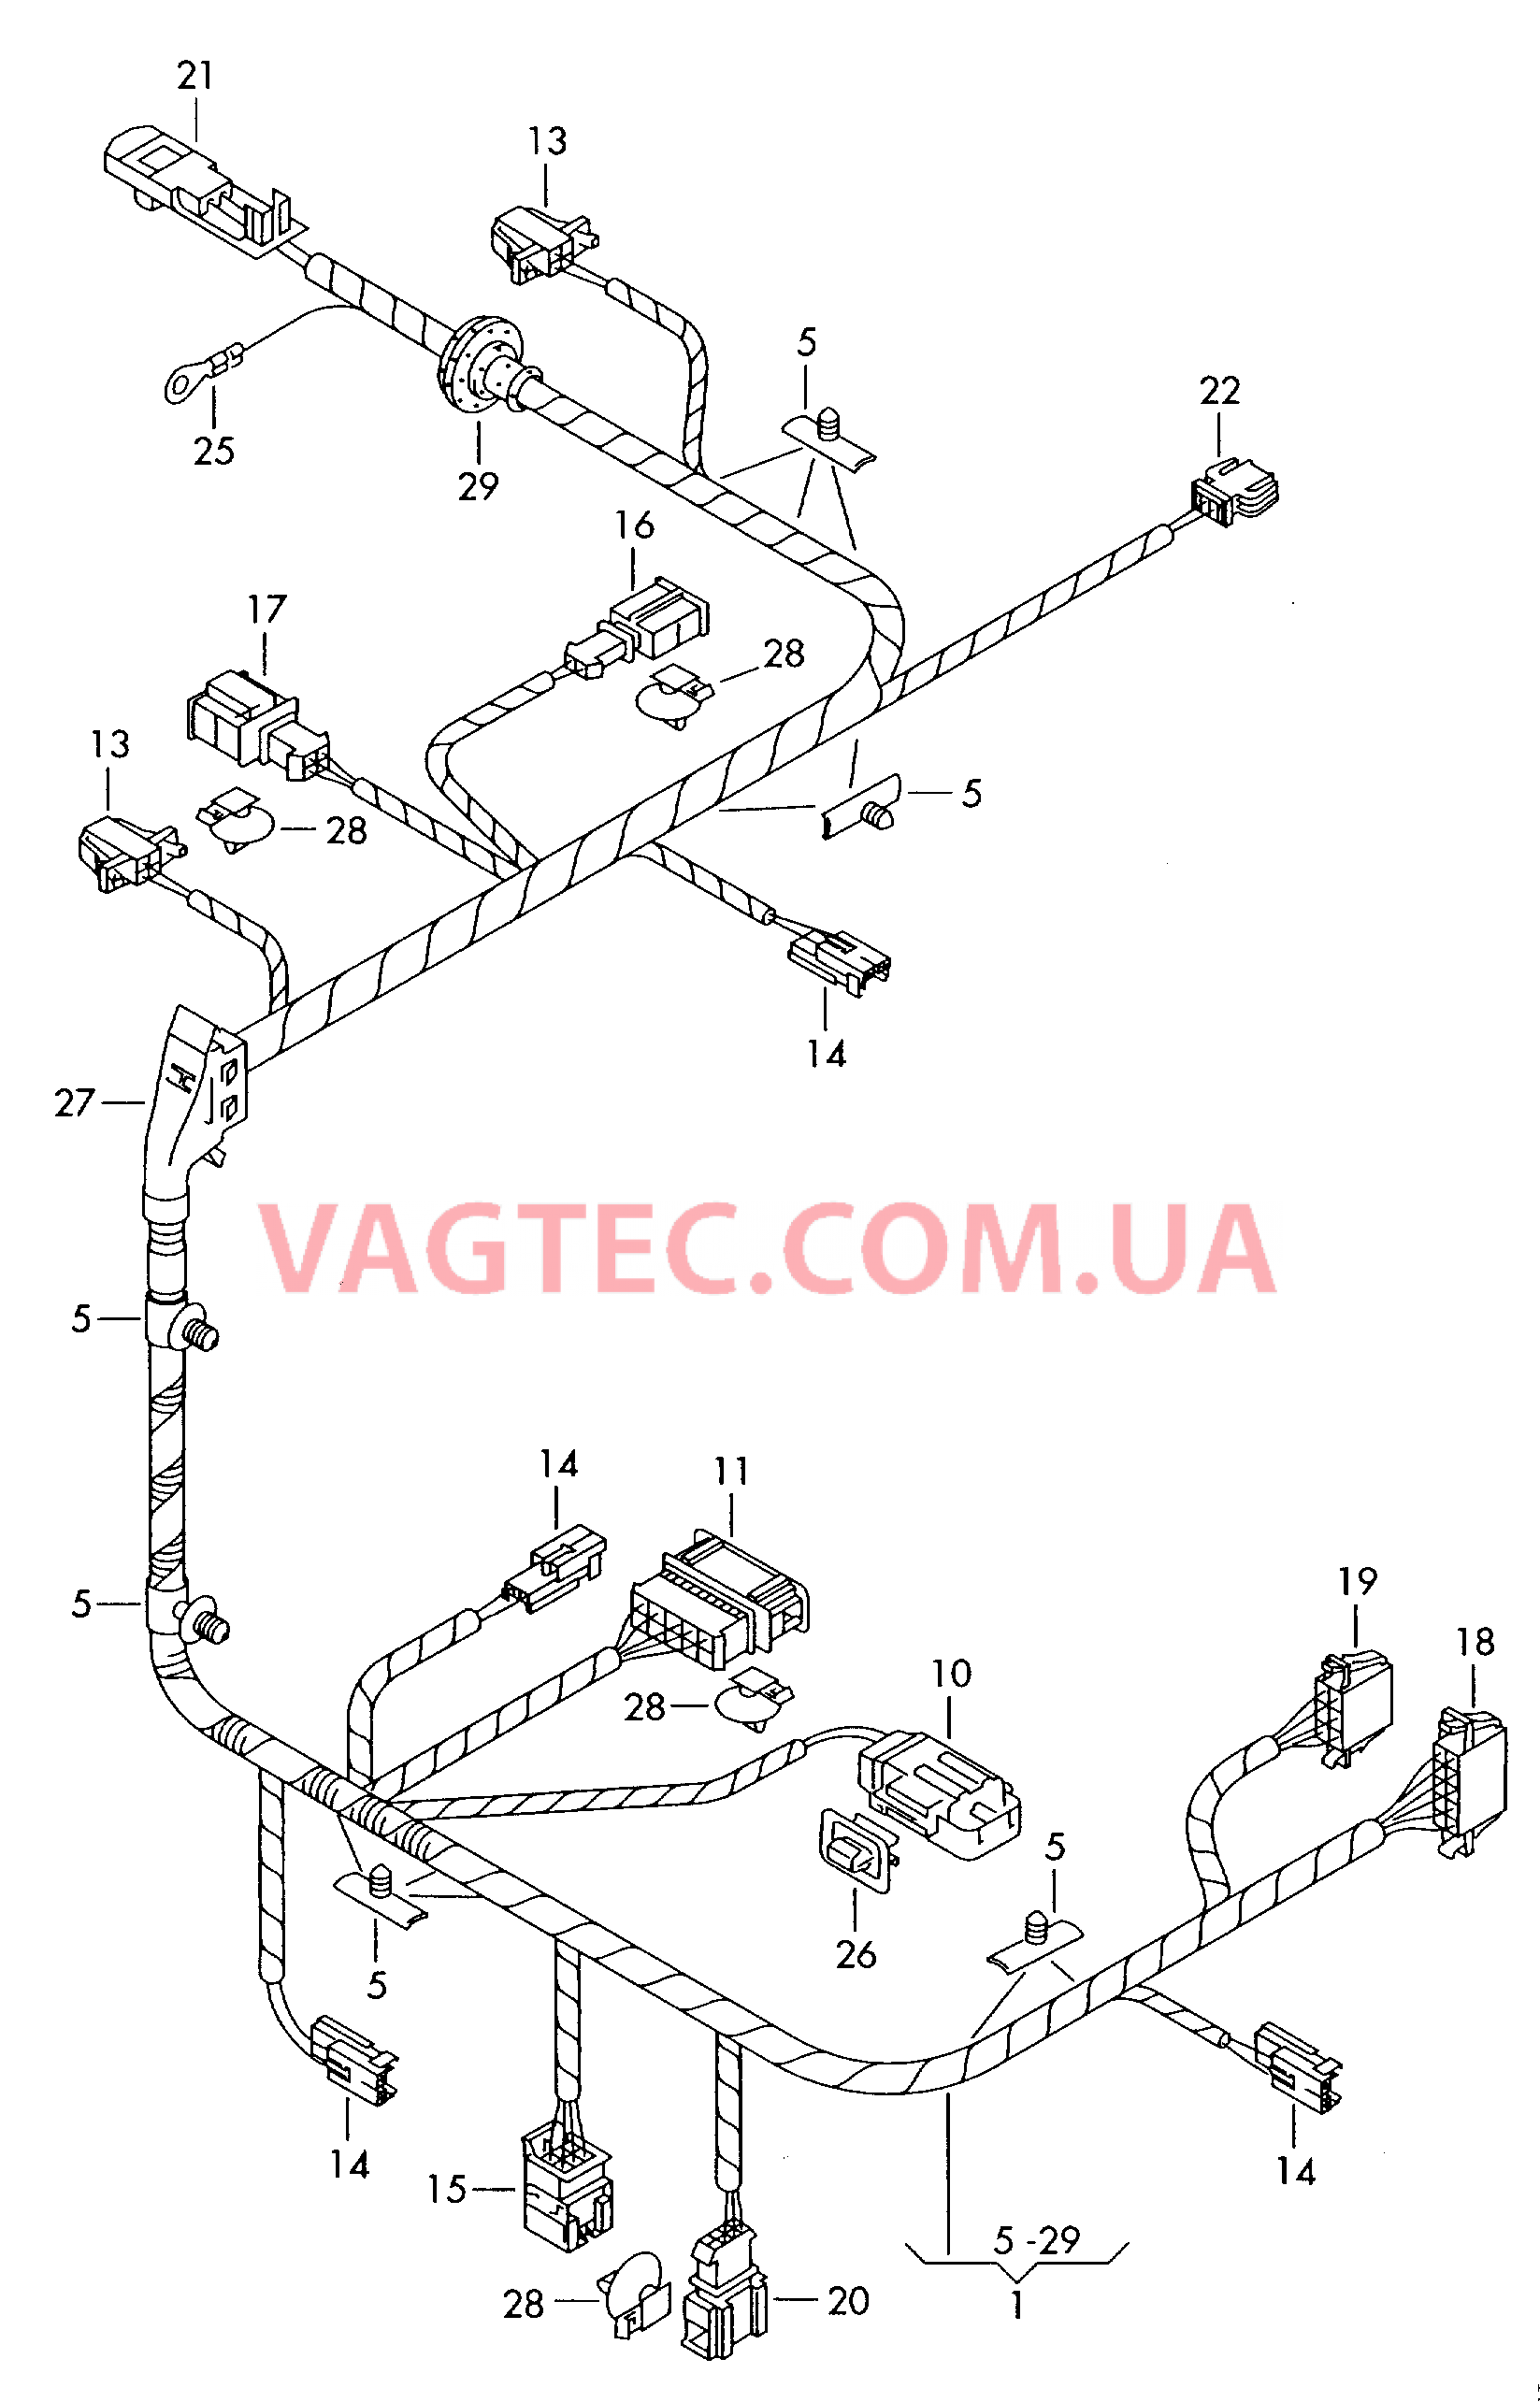 Жгут проводов сиденьяс электрорегулировкой  для а/м с 12-позиционной электрической регулировкой сидений  для VOLKSWAGEN Phaeton 2003